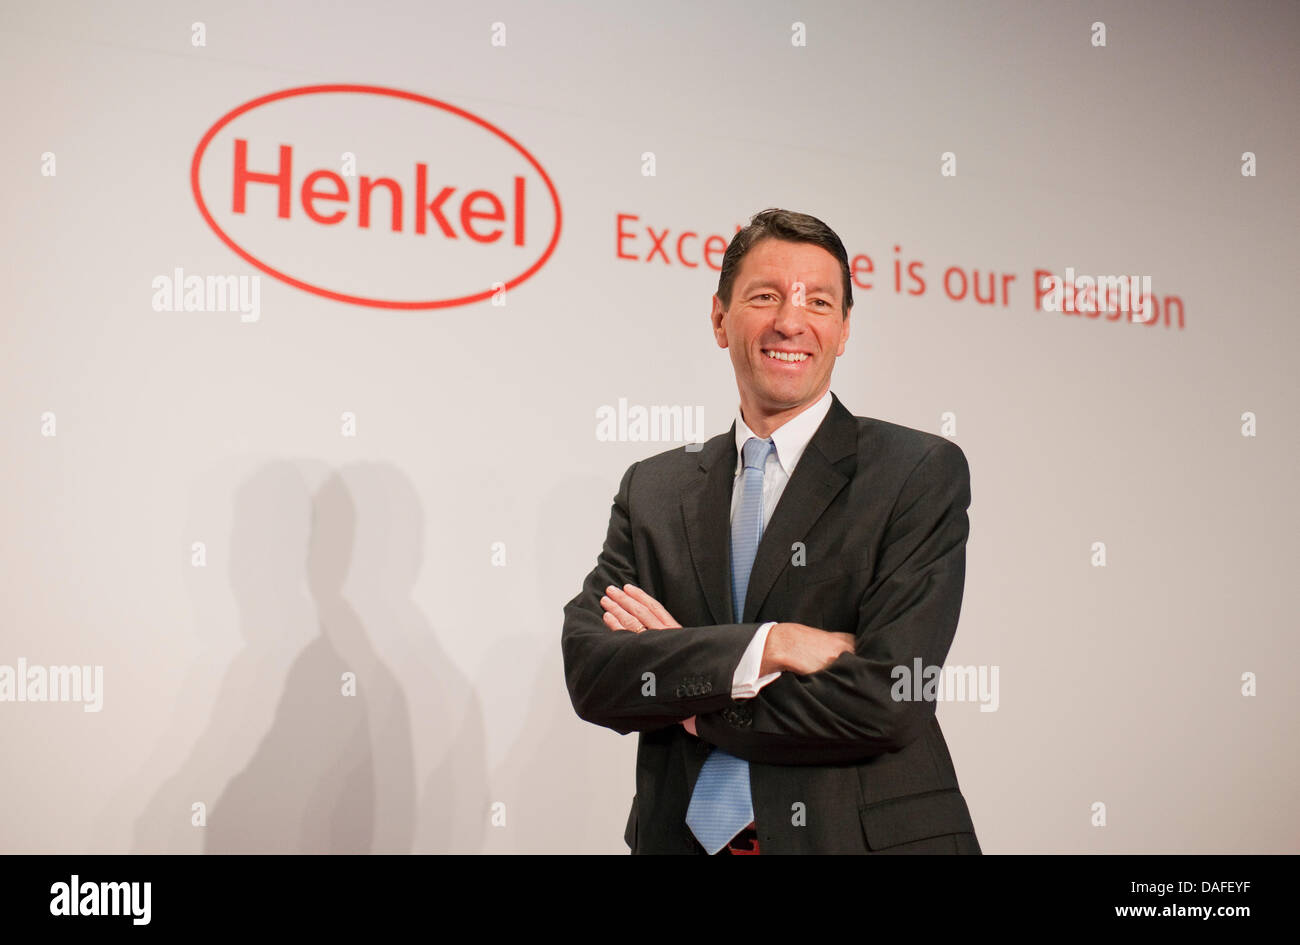 company Henkel, Kasper Rorsted, speaks 